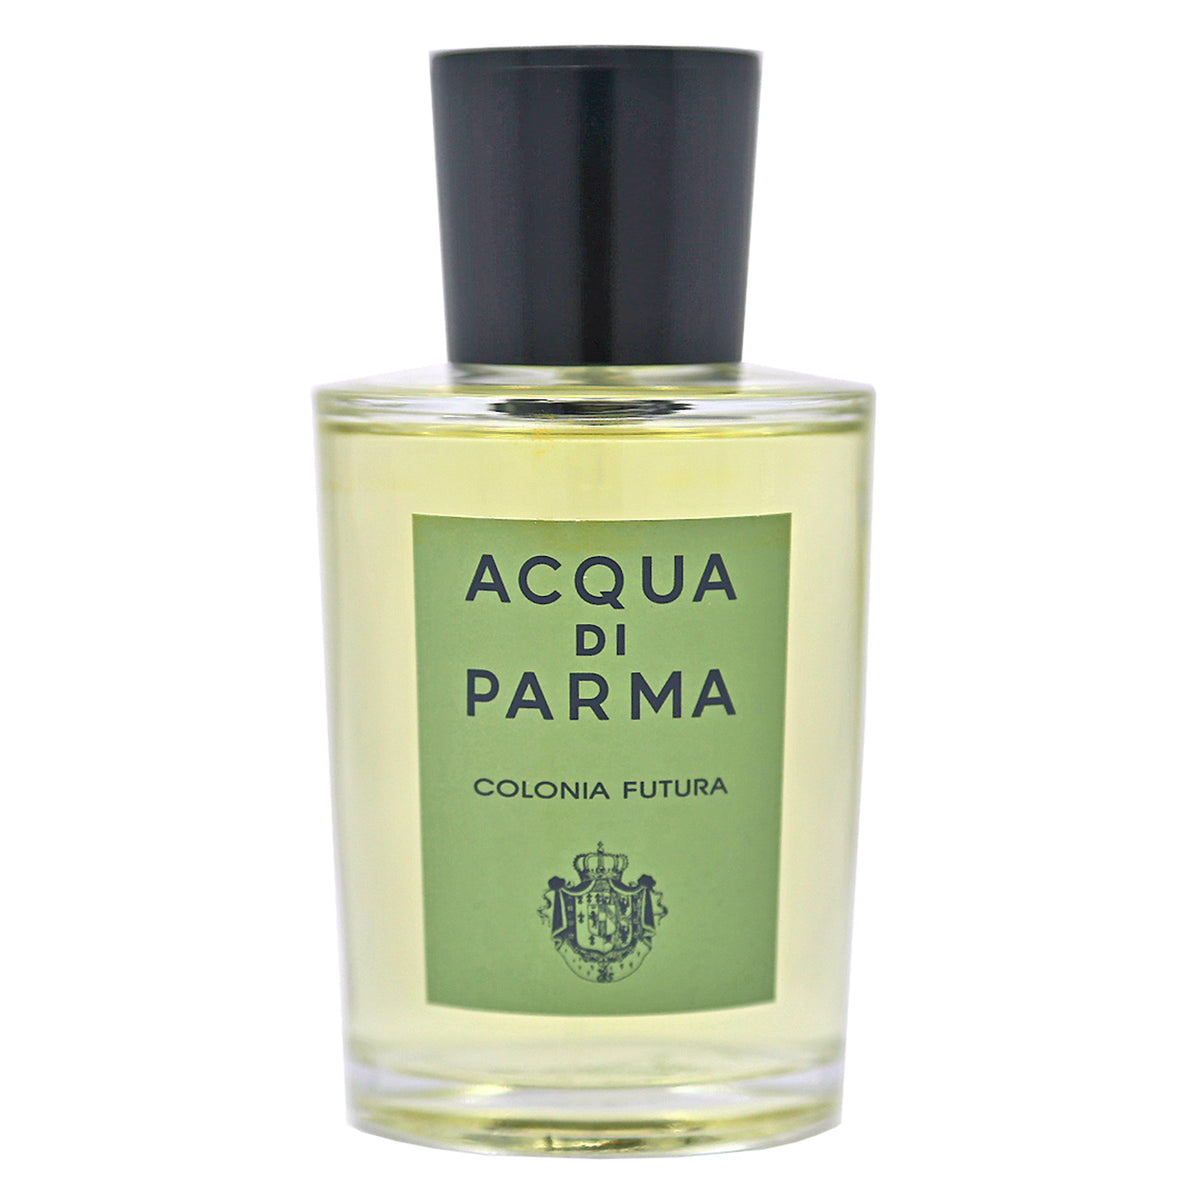 Acqua Di Parma Colonia Futura Eau Cologne Unisex – Perfume & Cologne Decant Fragrance